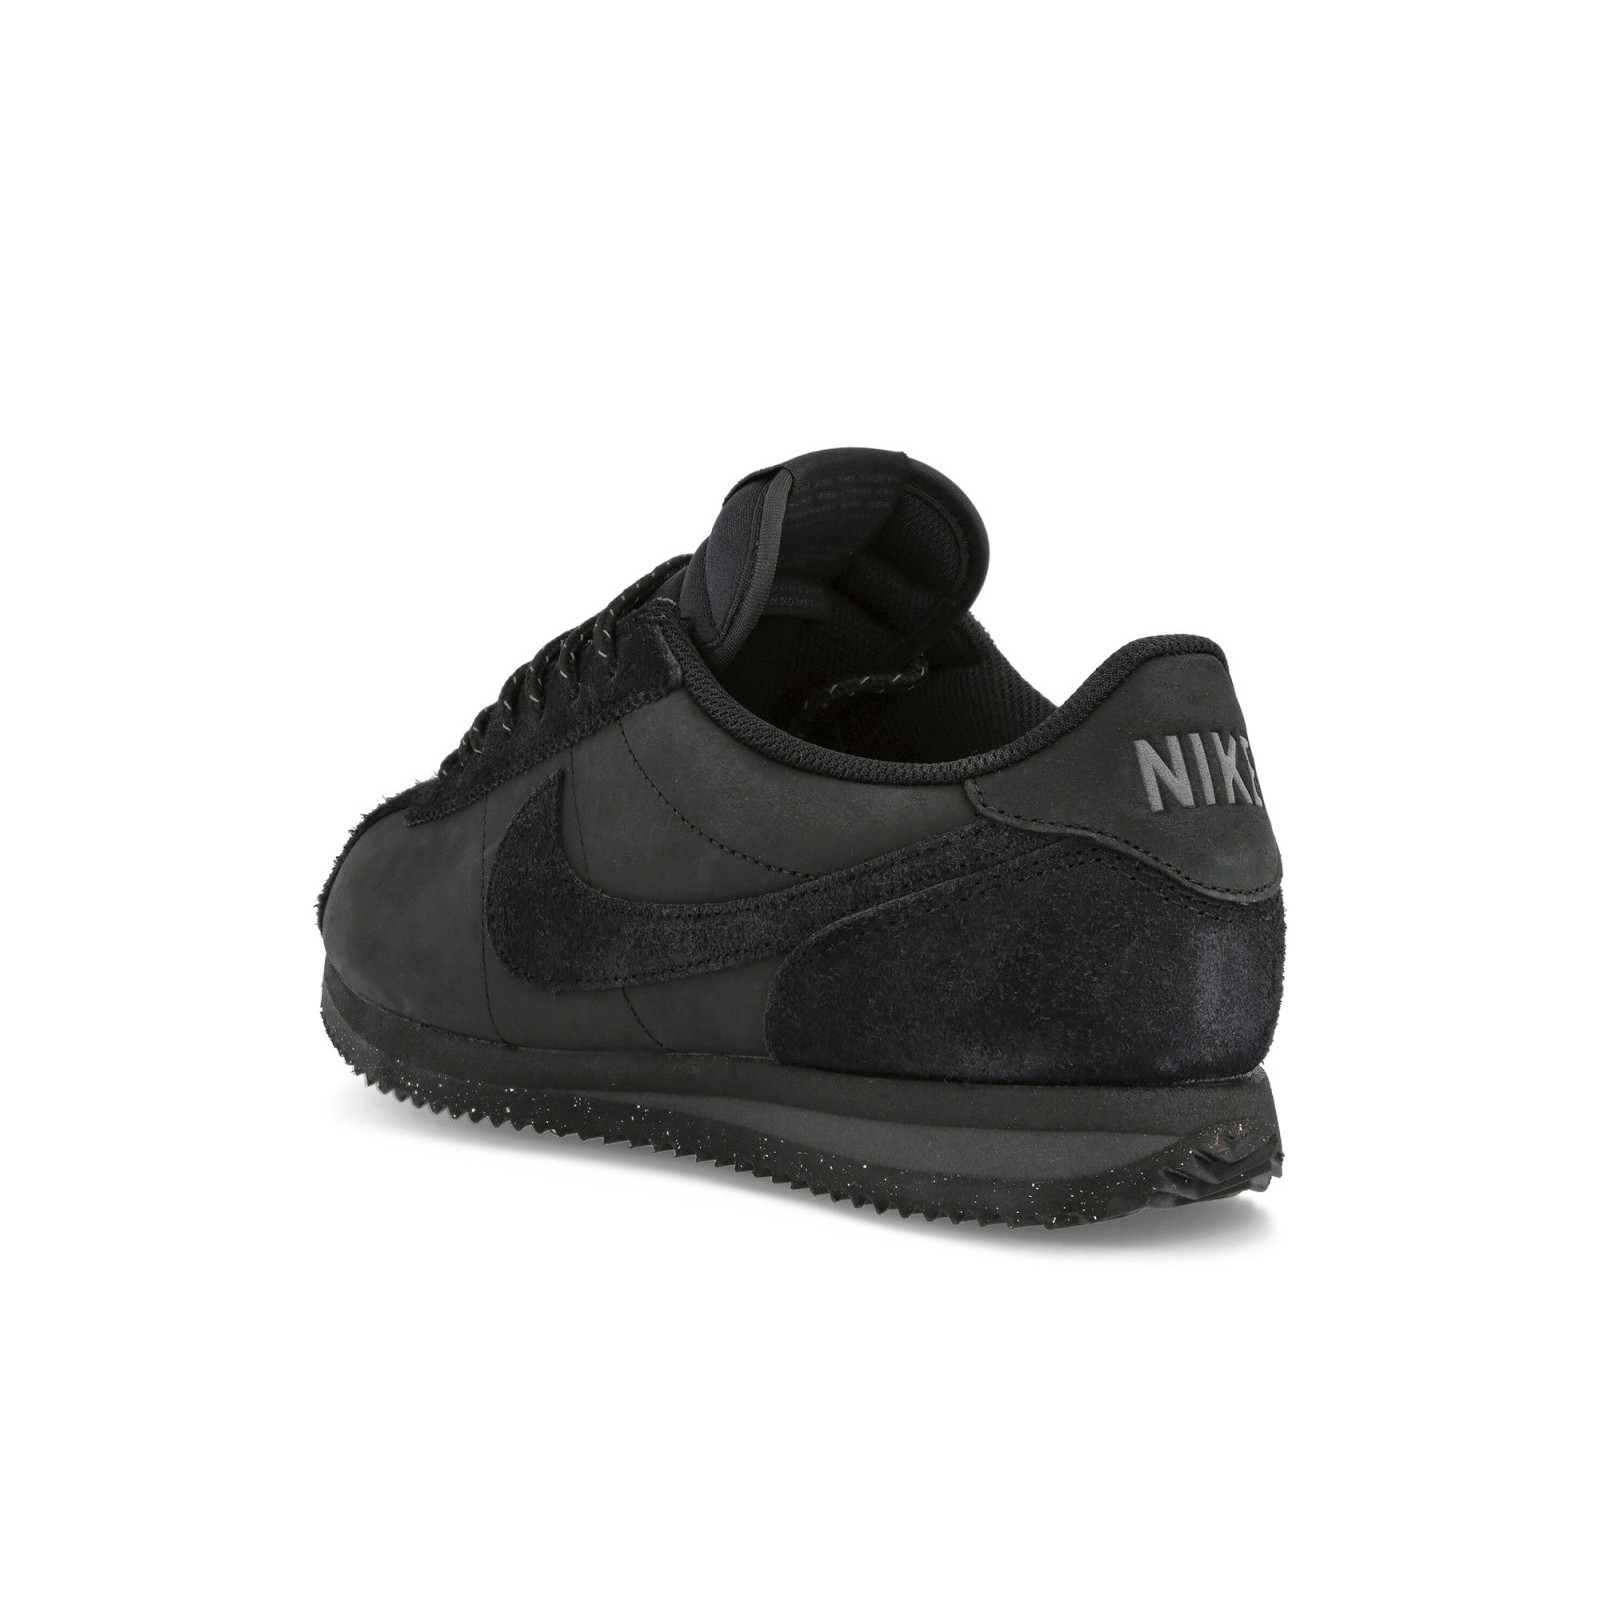 Nike Cortez Premium
« Black »